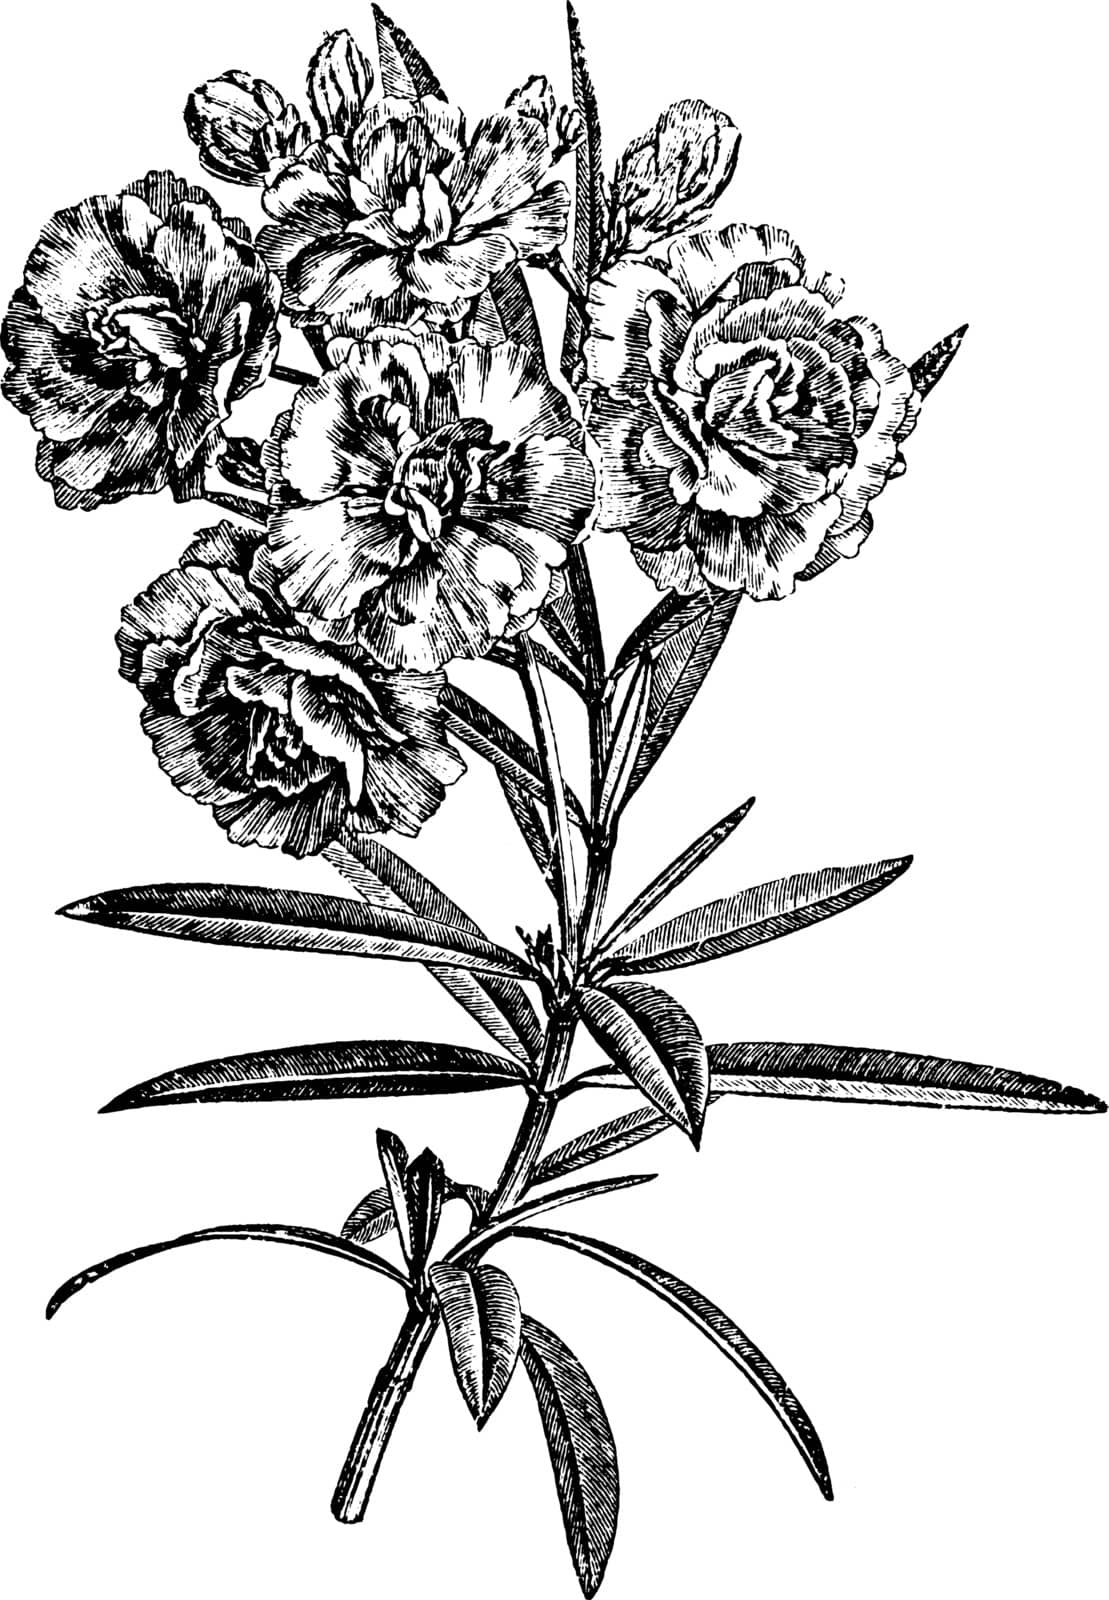 Flowering Branchlet of Nerium Oleander Album Plenum vintage illu by Morphart